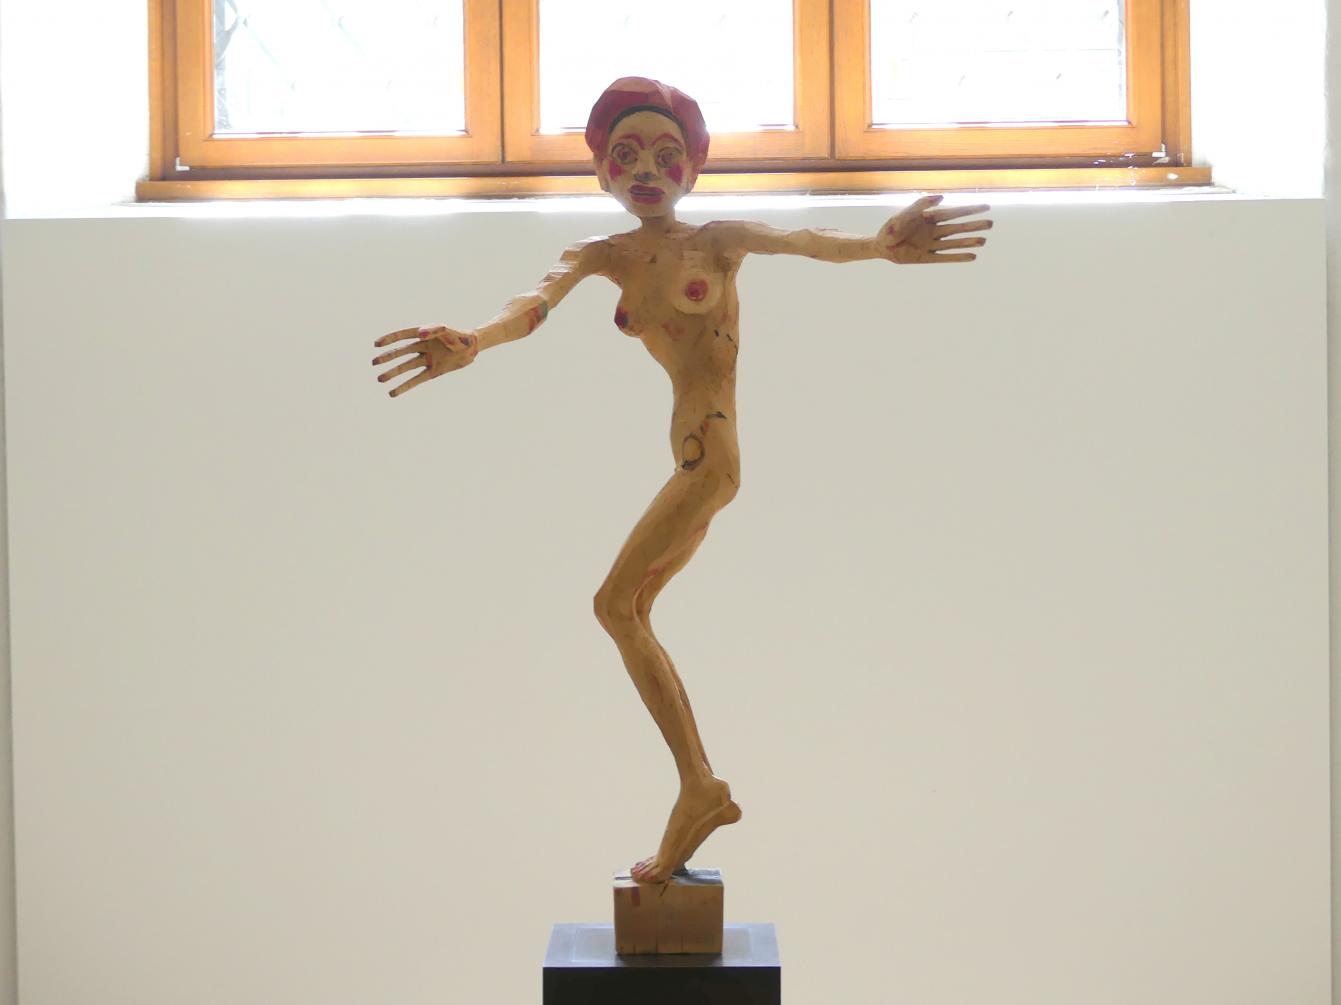 Hans Scheib (1997), Mit offenen Armen, Dresden, Albertinum, Galerie Neue Meister, Erdgeschoss, Skulpturenhalle, 1997, Bild 1/7